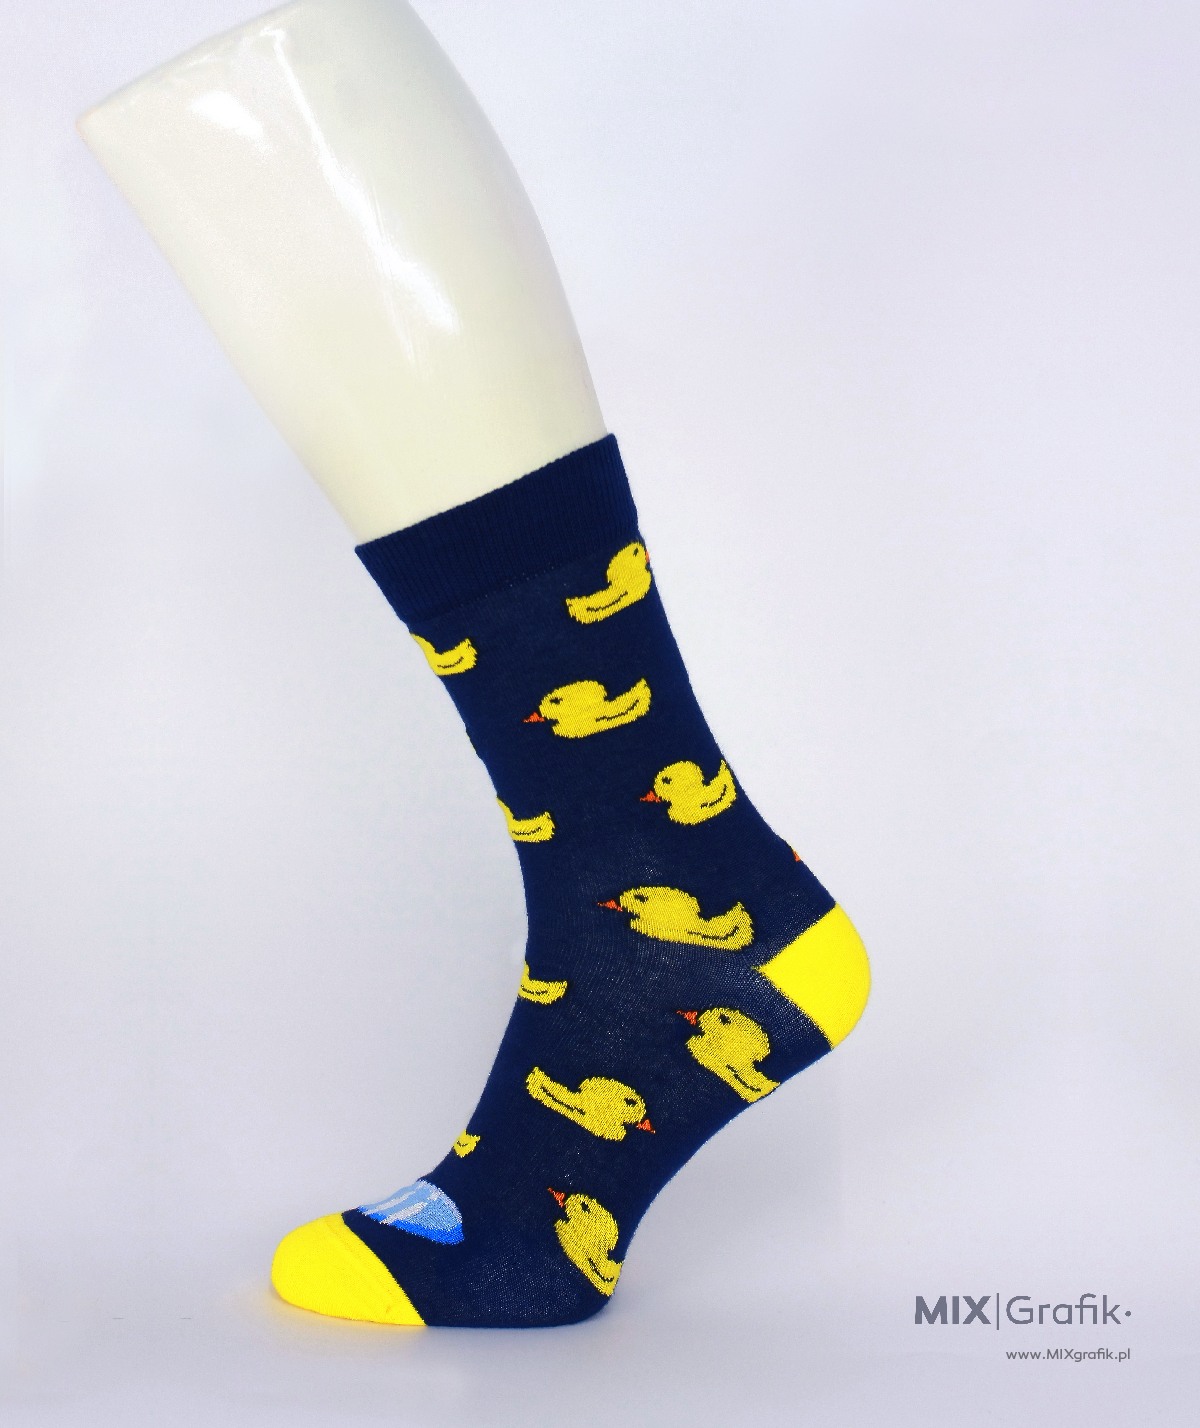 Calzini personalizzati sii anatre custom socks design 07